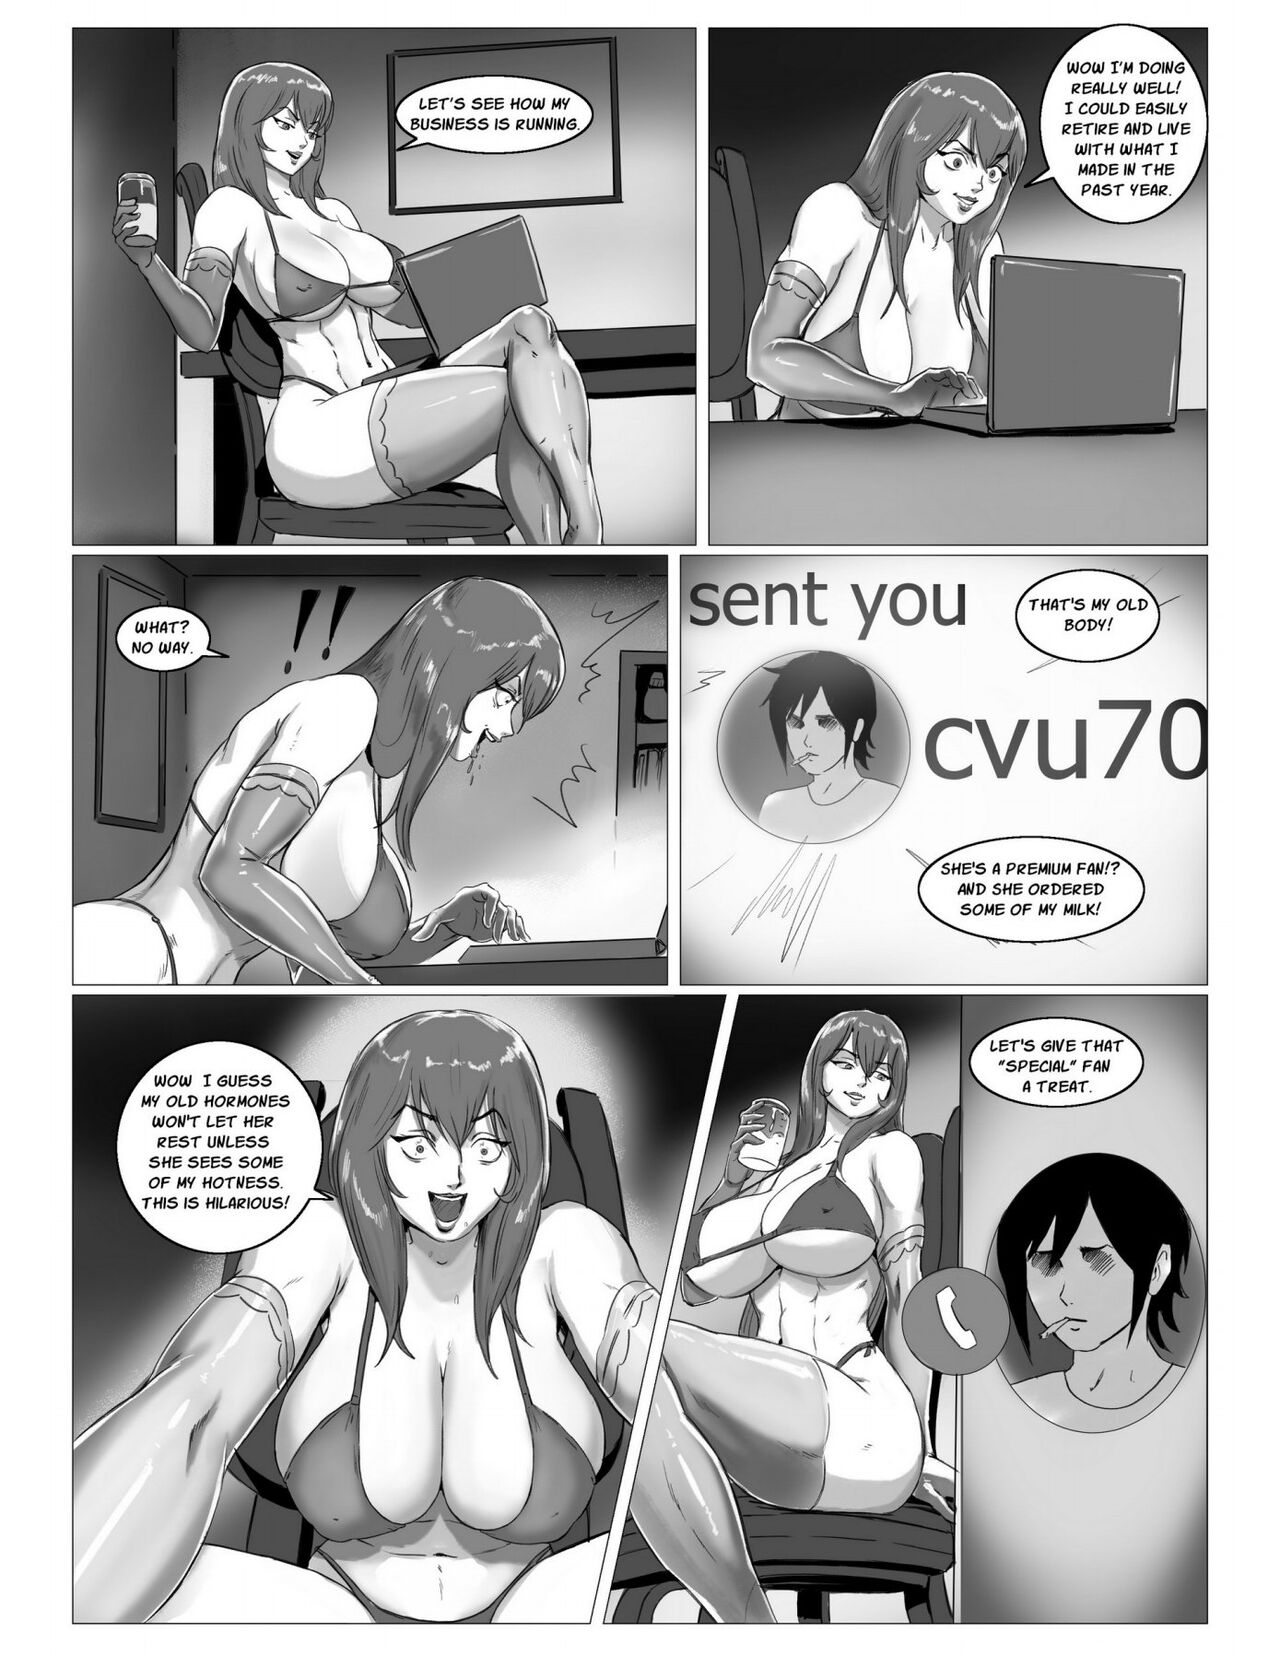 1280px x 1656px - Miss Jalani 2 [FarhadTG + julionatalio] â€¢ Free Porn Comics